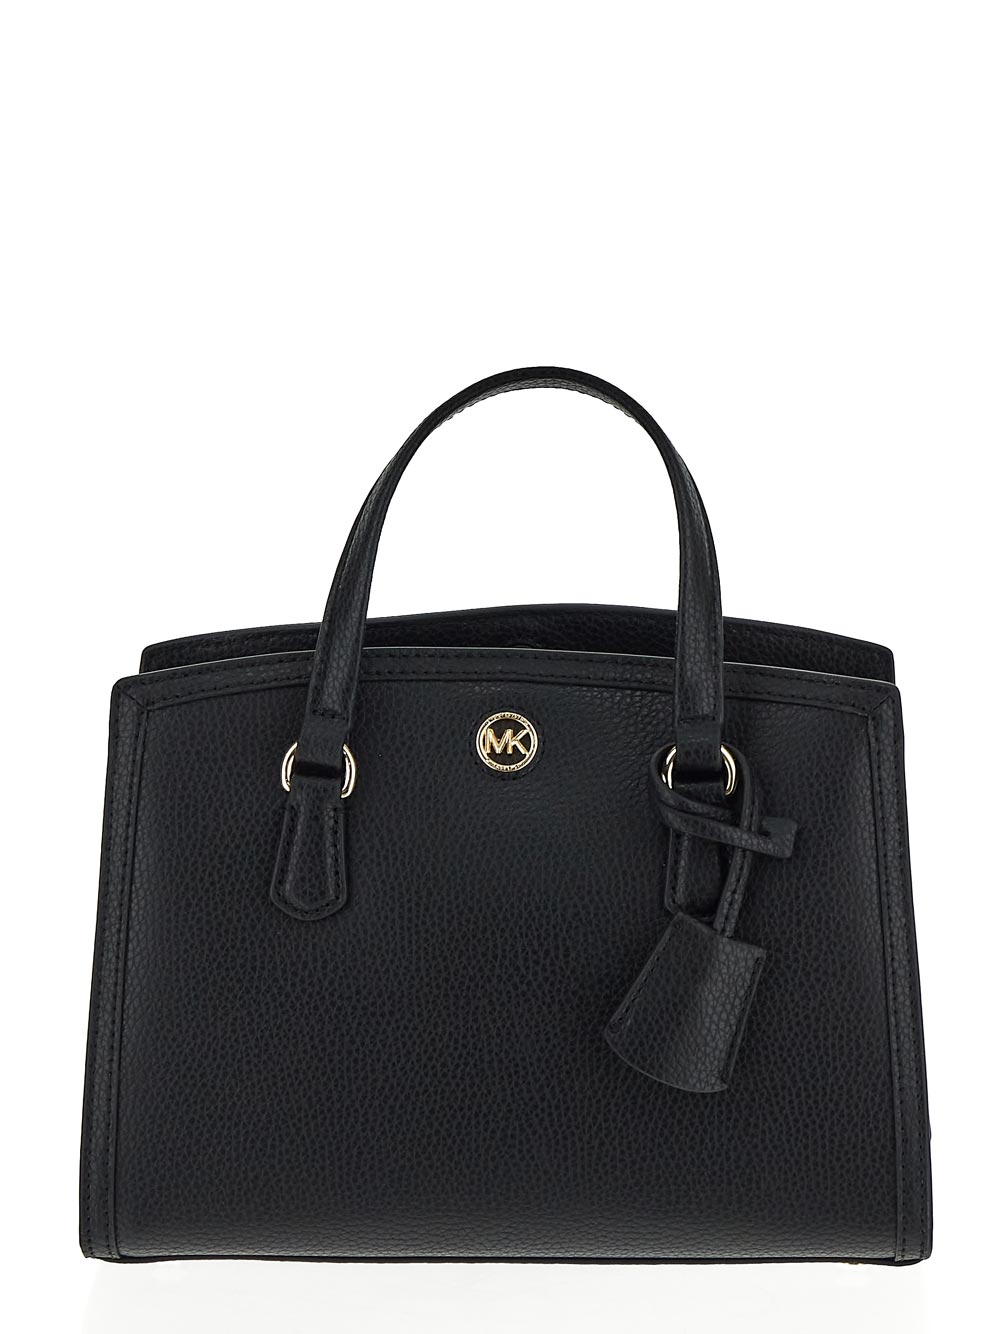 Michael Kors Chantal Small Leather Messenger Bag